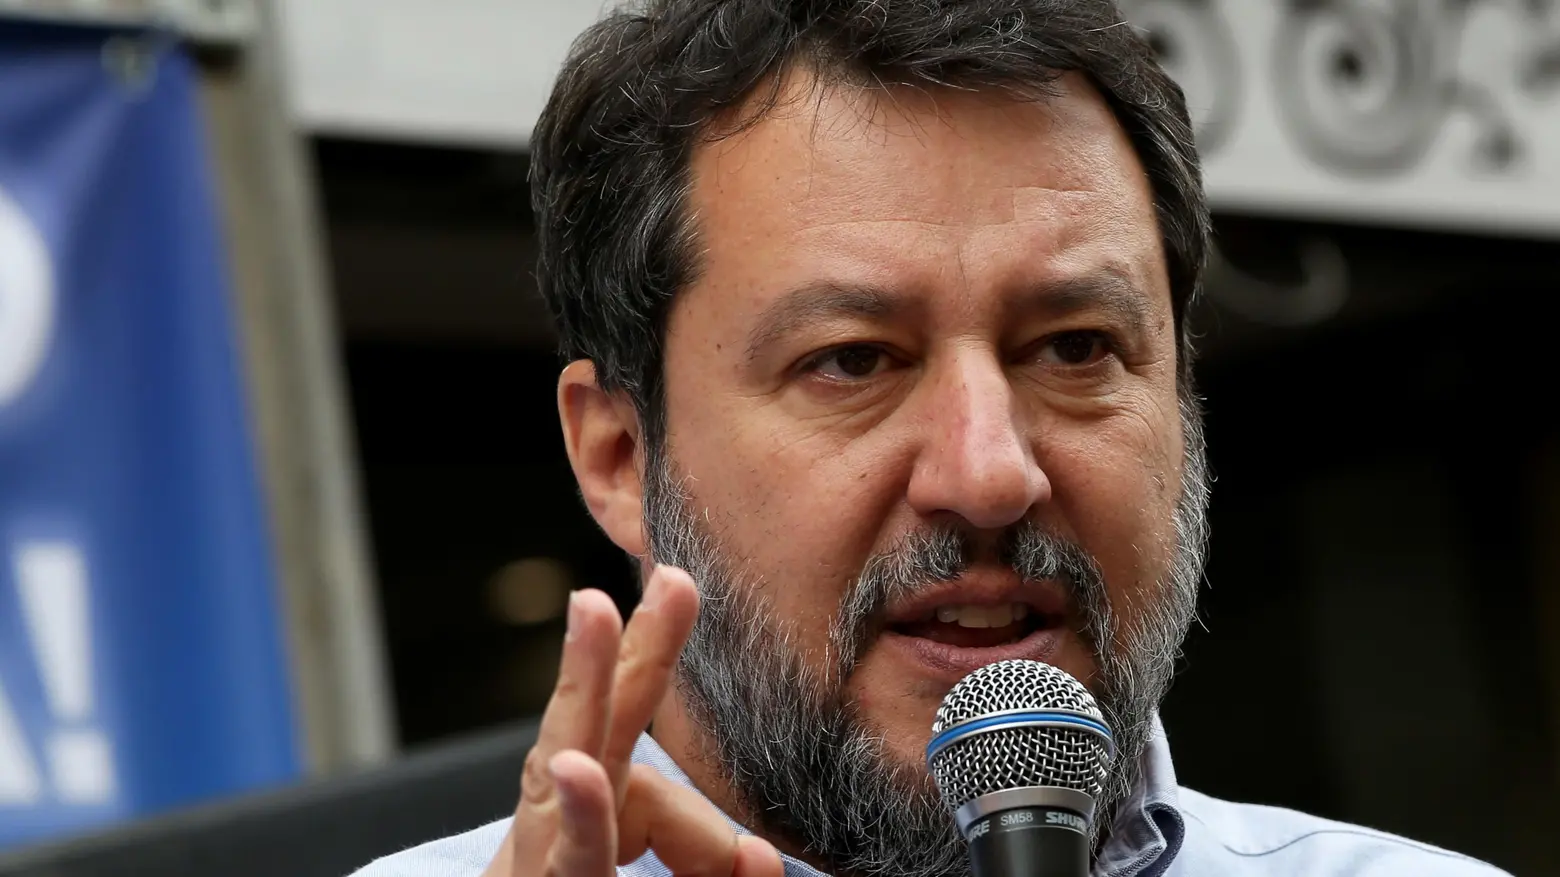 La talpa si mette in moto, il ministro Salvini oggi a Campo di Marte